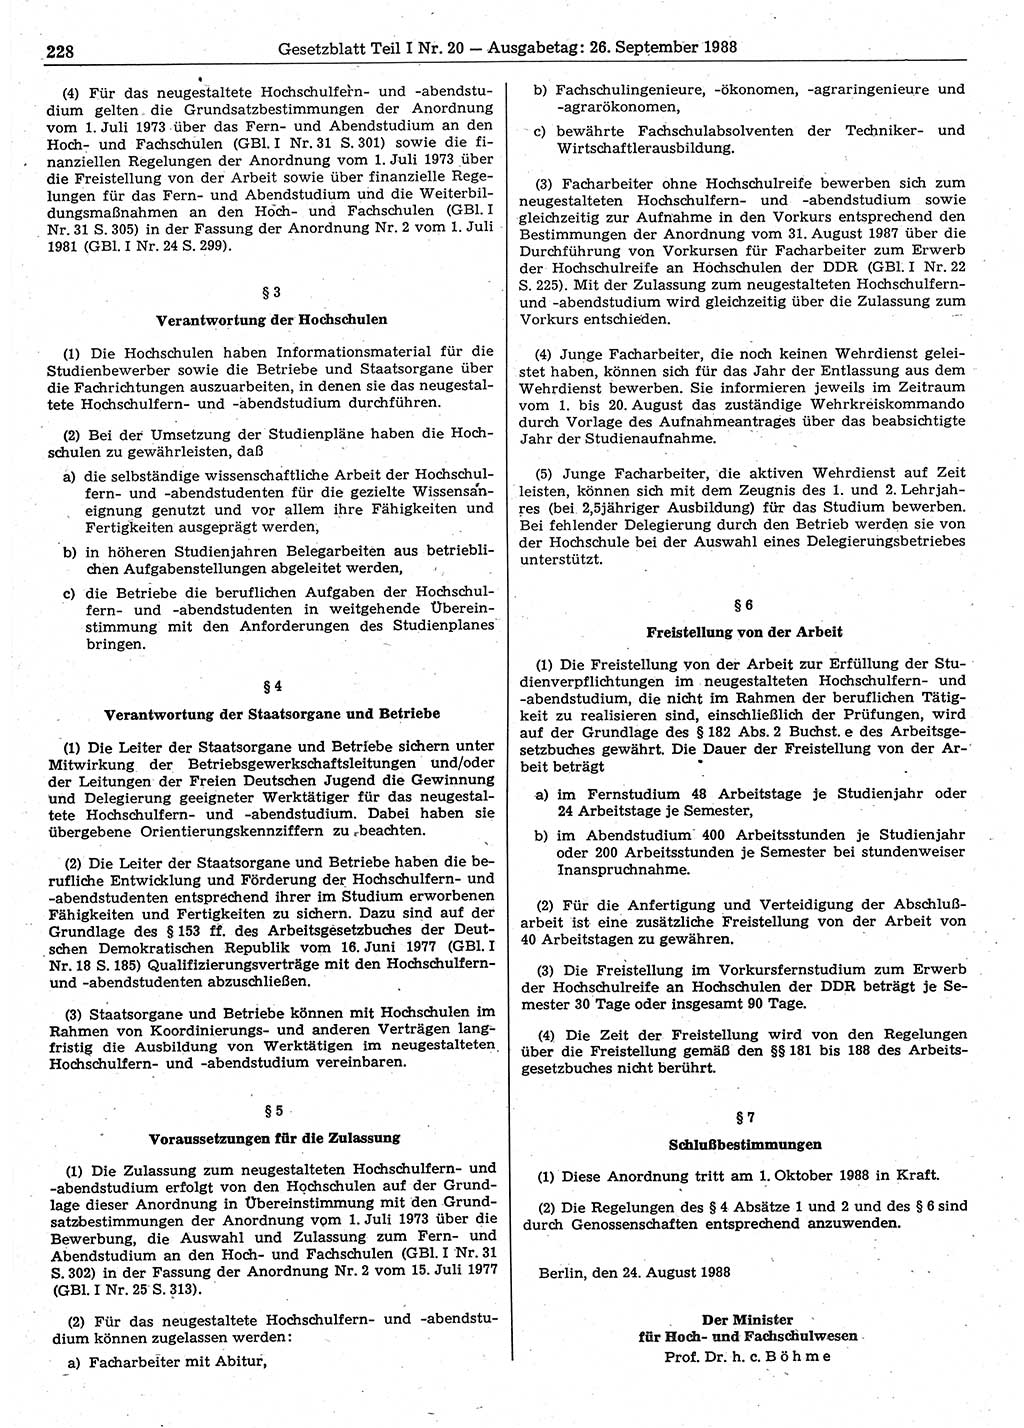 Gesetzblatt (GBl.) der Deutschen Demokratischen Republik (DDR) Teil Ⅰ 1988, Seite 228 (GBl. DDR Ⅰ 1988, S. 228)